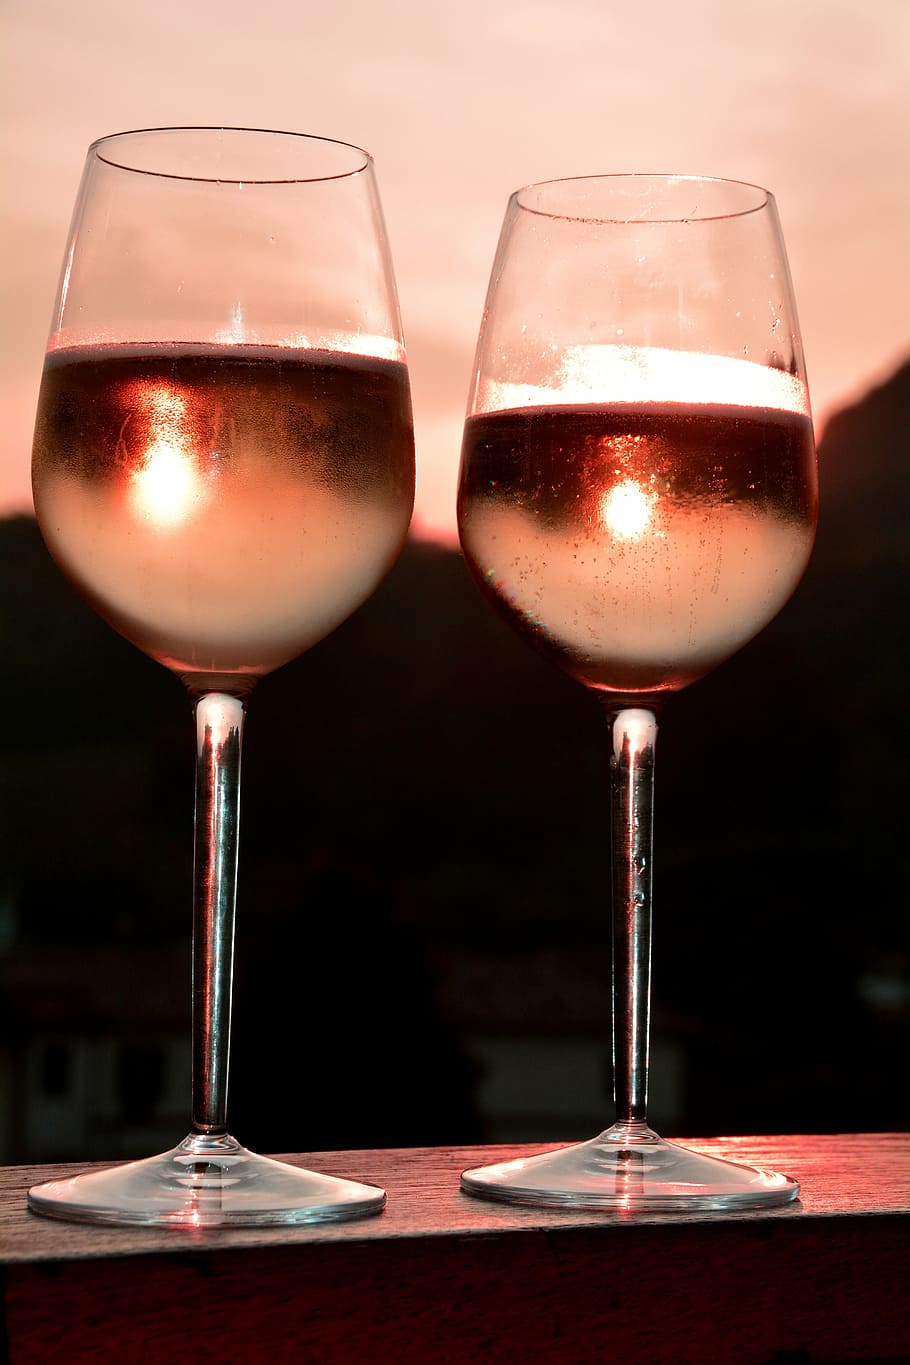 seletiva, fotografia de foco, 2 copos de vinho de haste longa, líquidos, dourado, hora, felicidades, saudação, taças de vinho, vinho